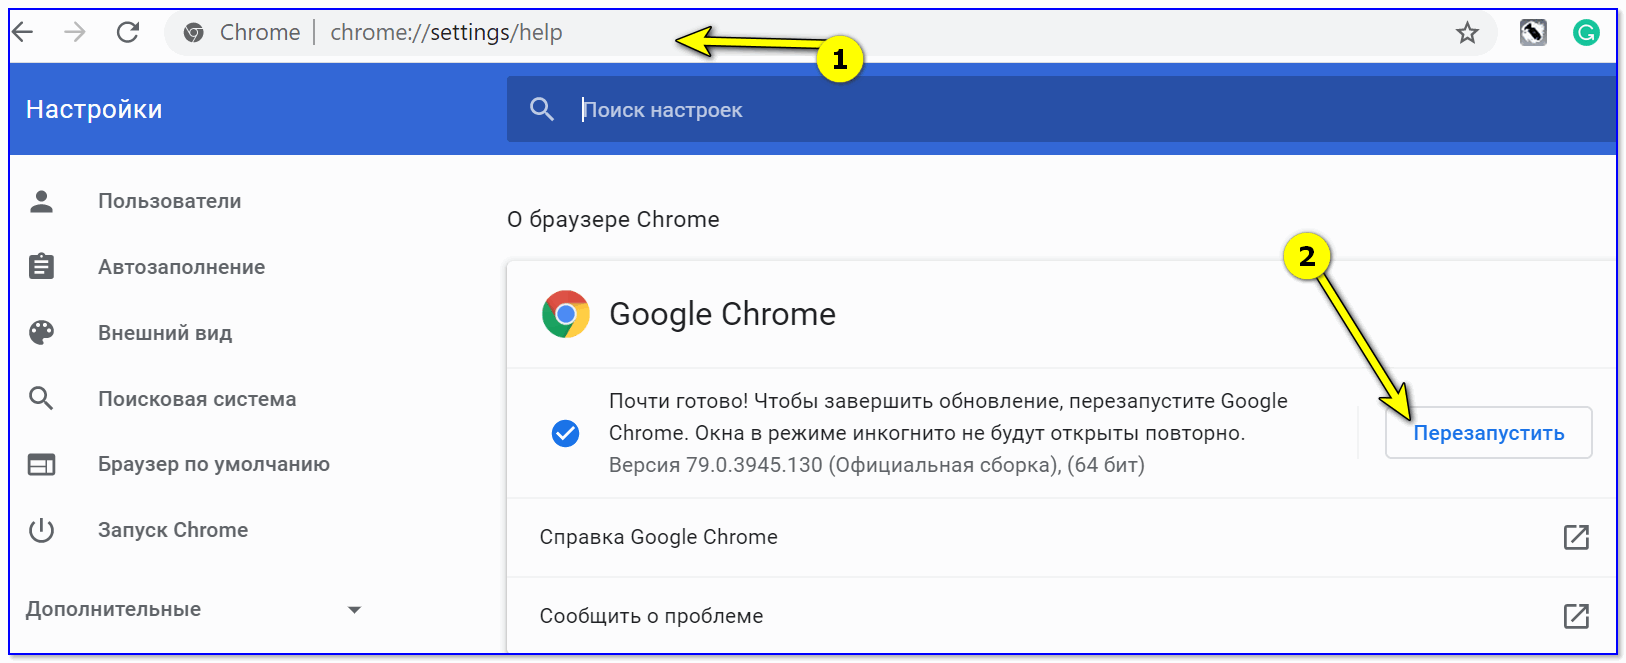 О браузере Chrome